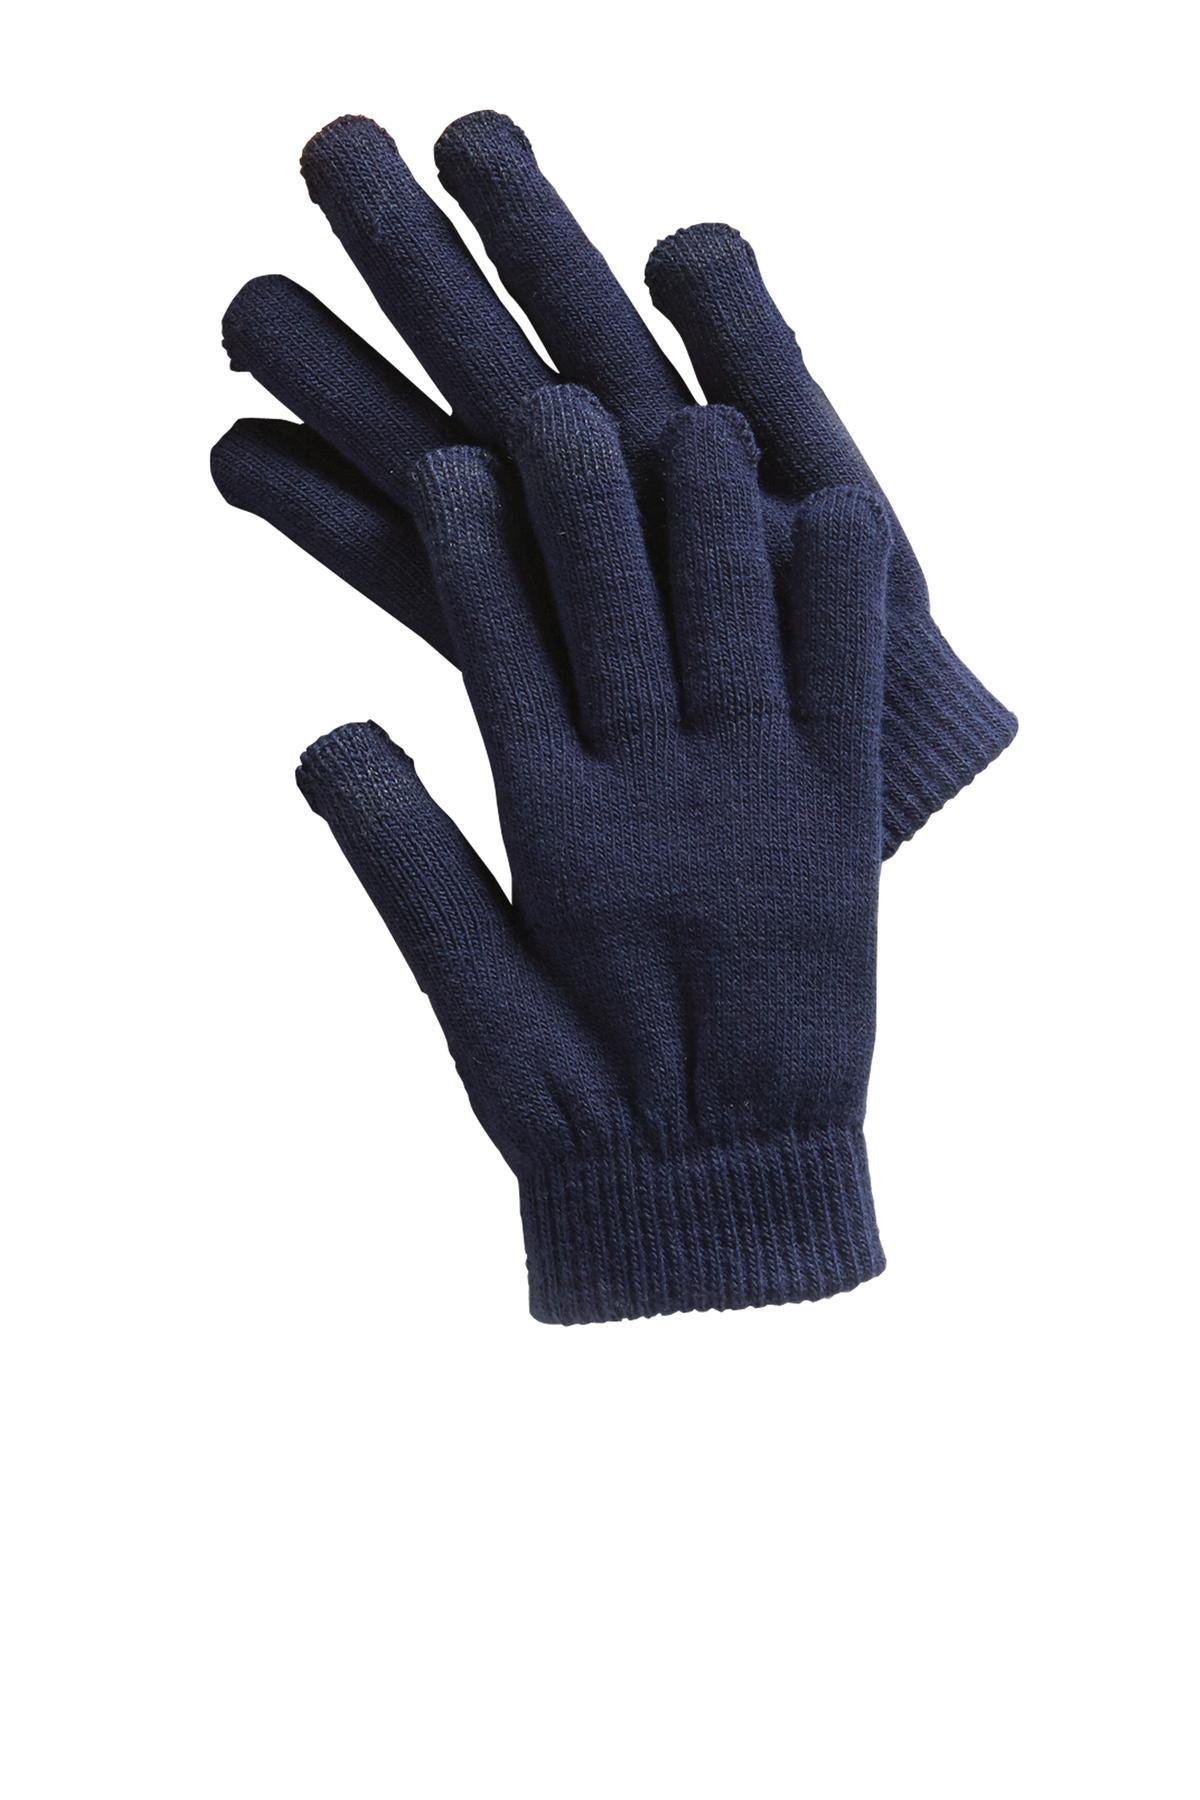 Sport-Tek Spectator Gloves. STA01 - Dresses Max